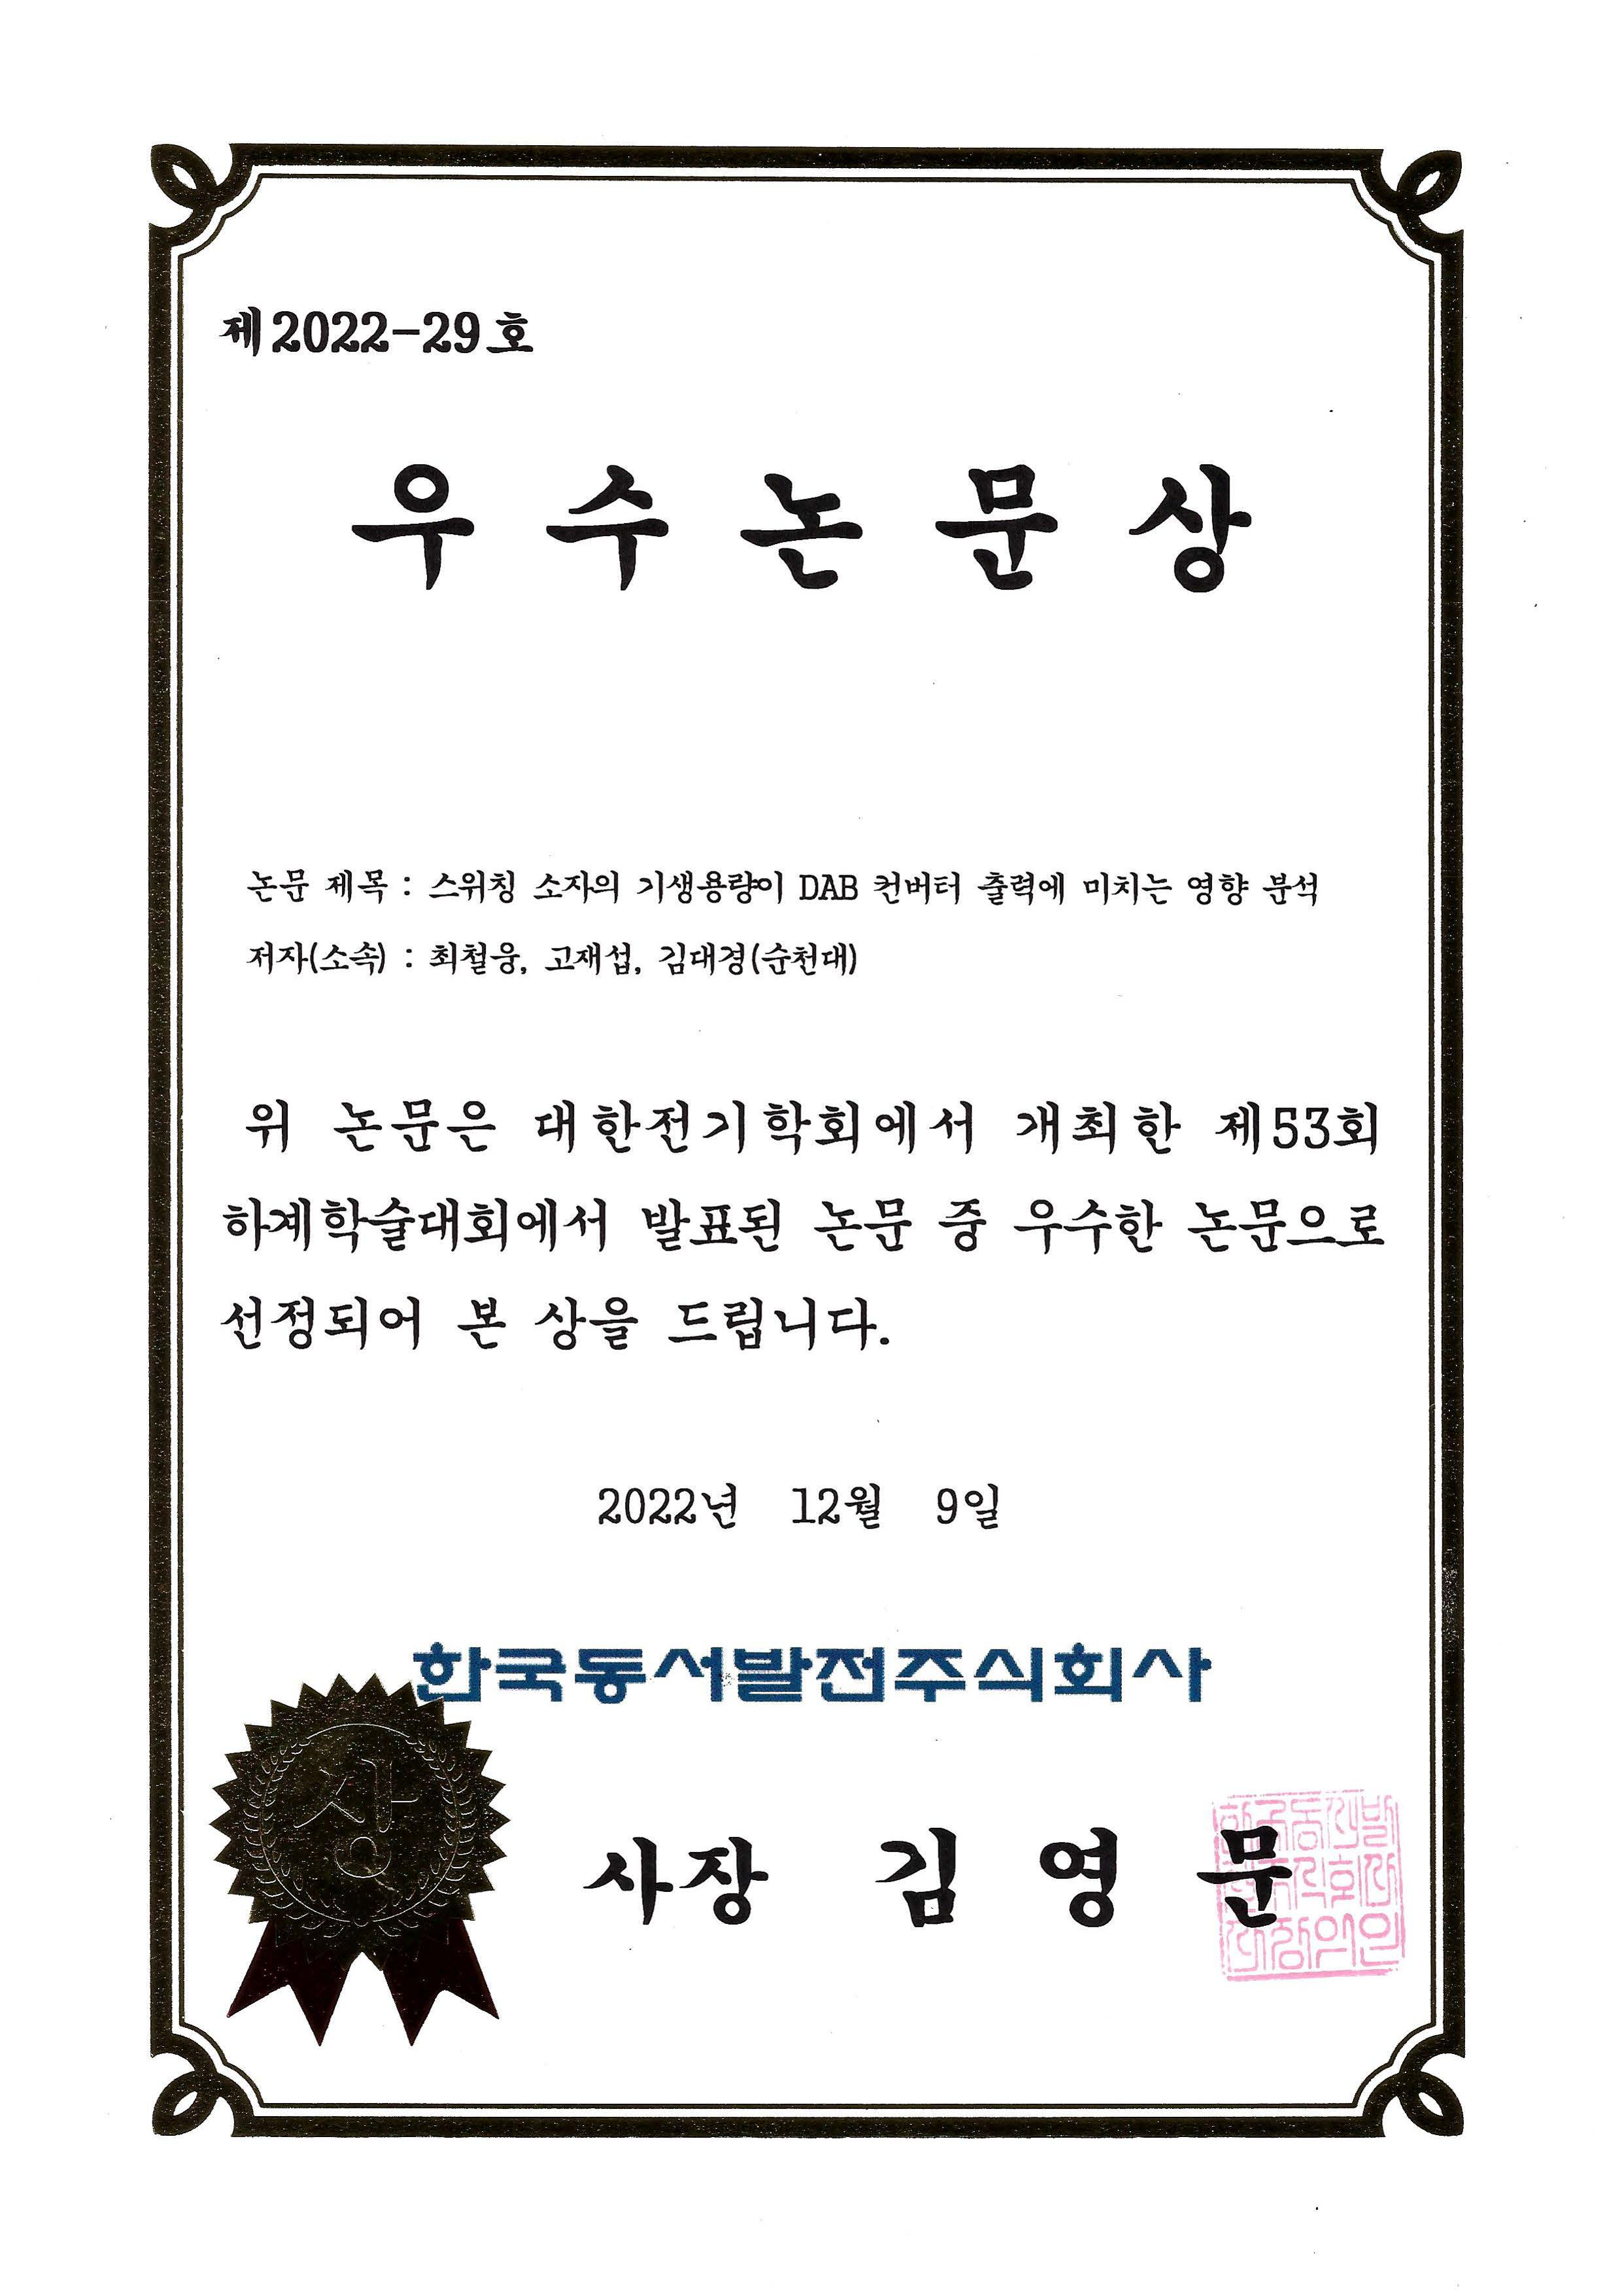 제 53회 대한전기학회 한국동서발전사장상 수상